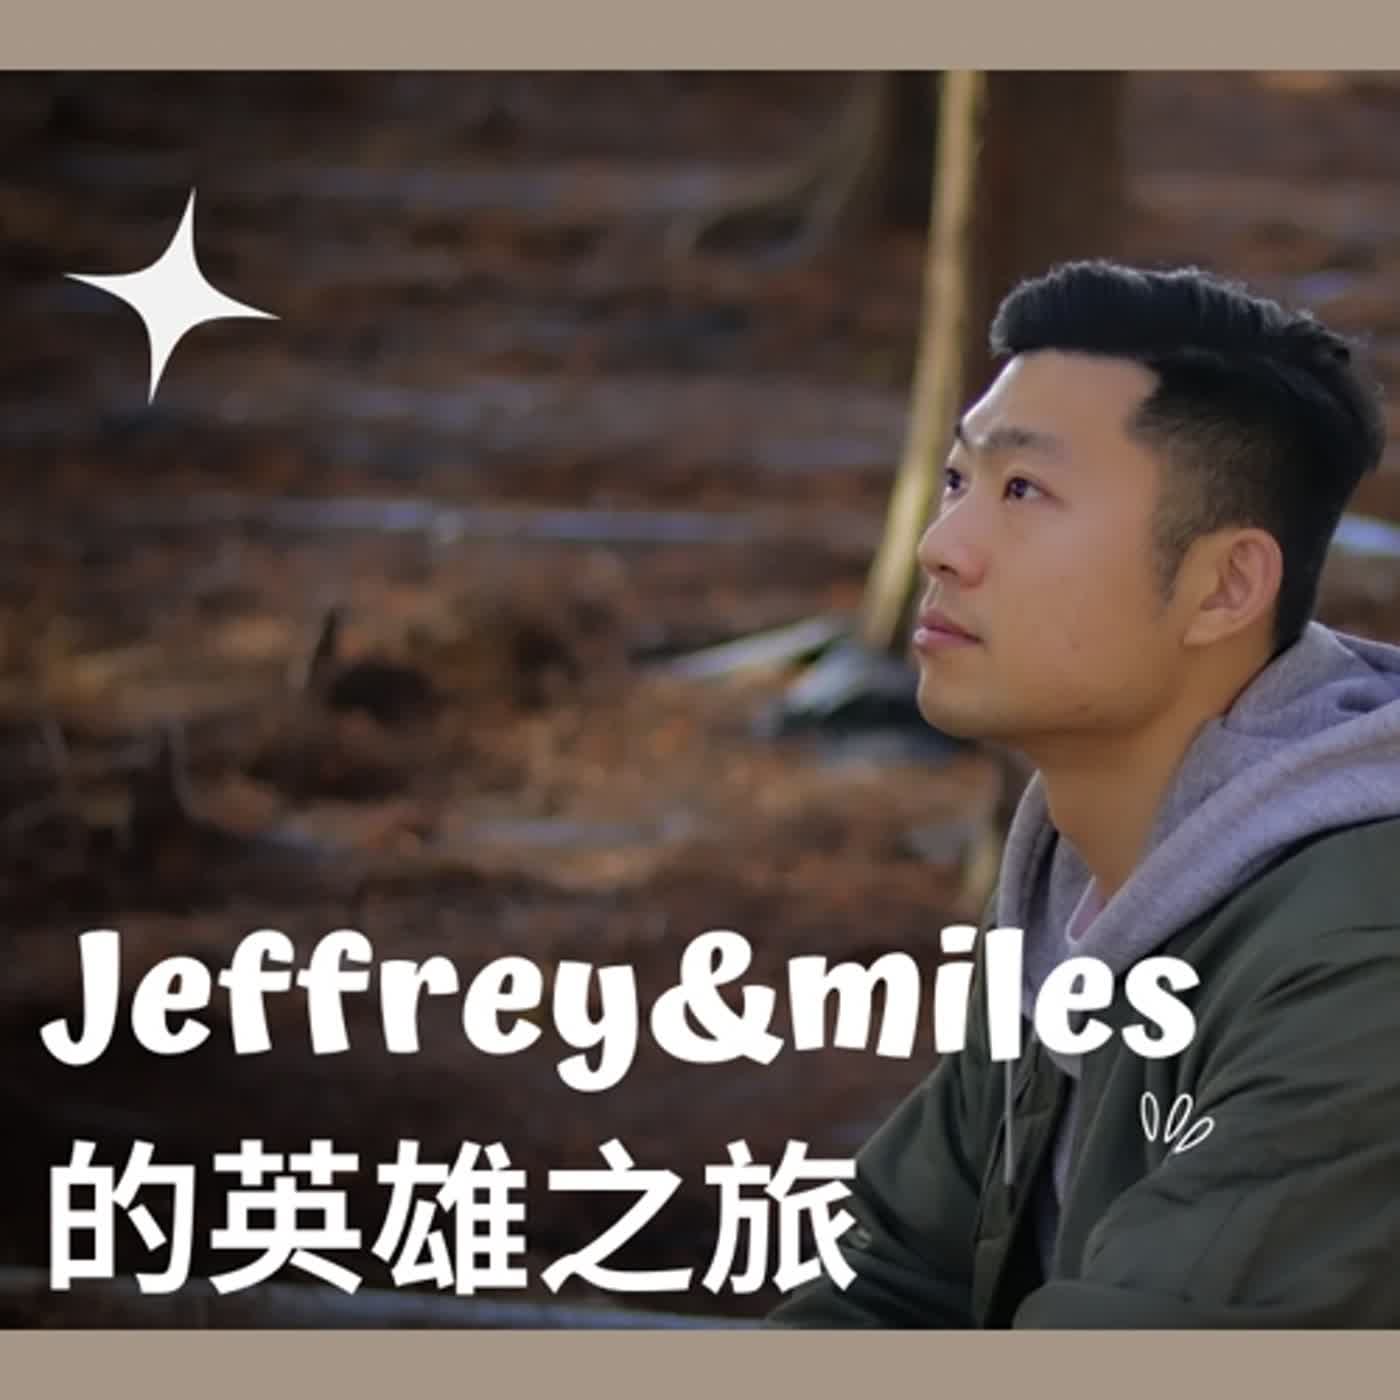 「Jeffrey&Miles的反英雄之旅」